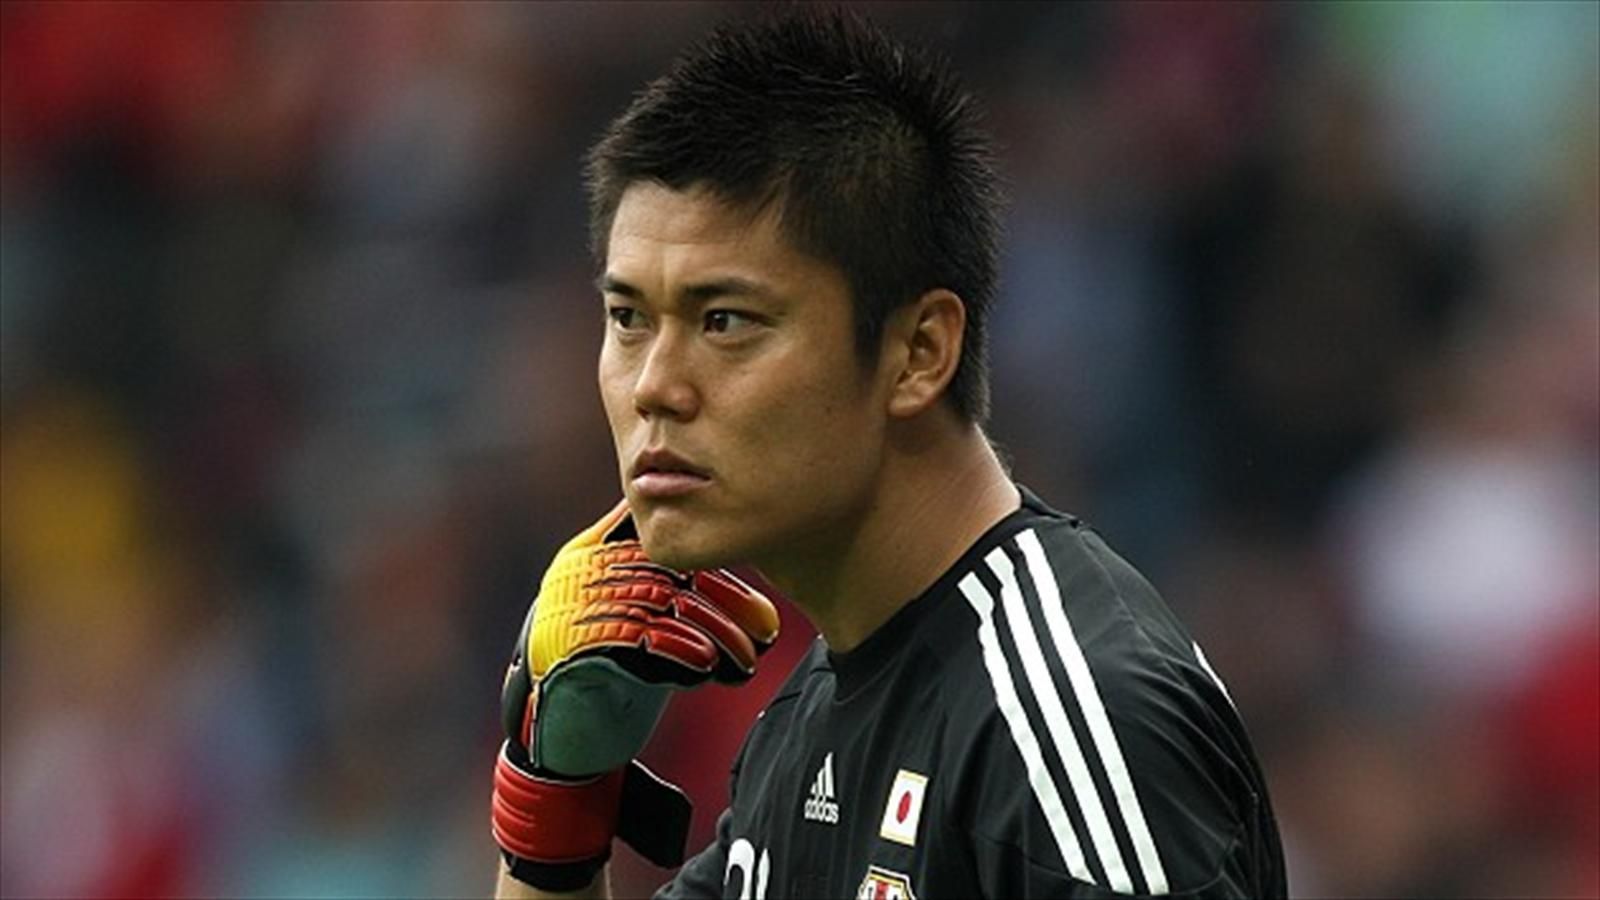 Japan international Eiji Kawashima poised to make Dundee United